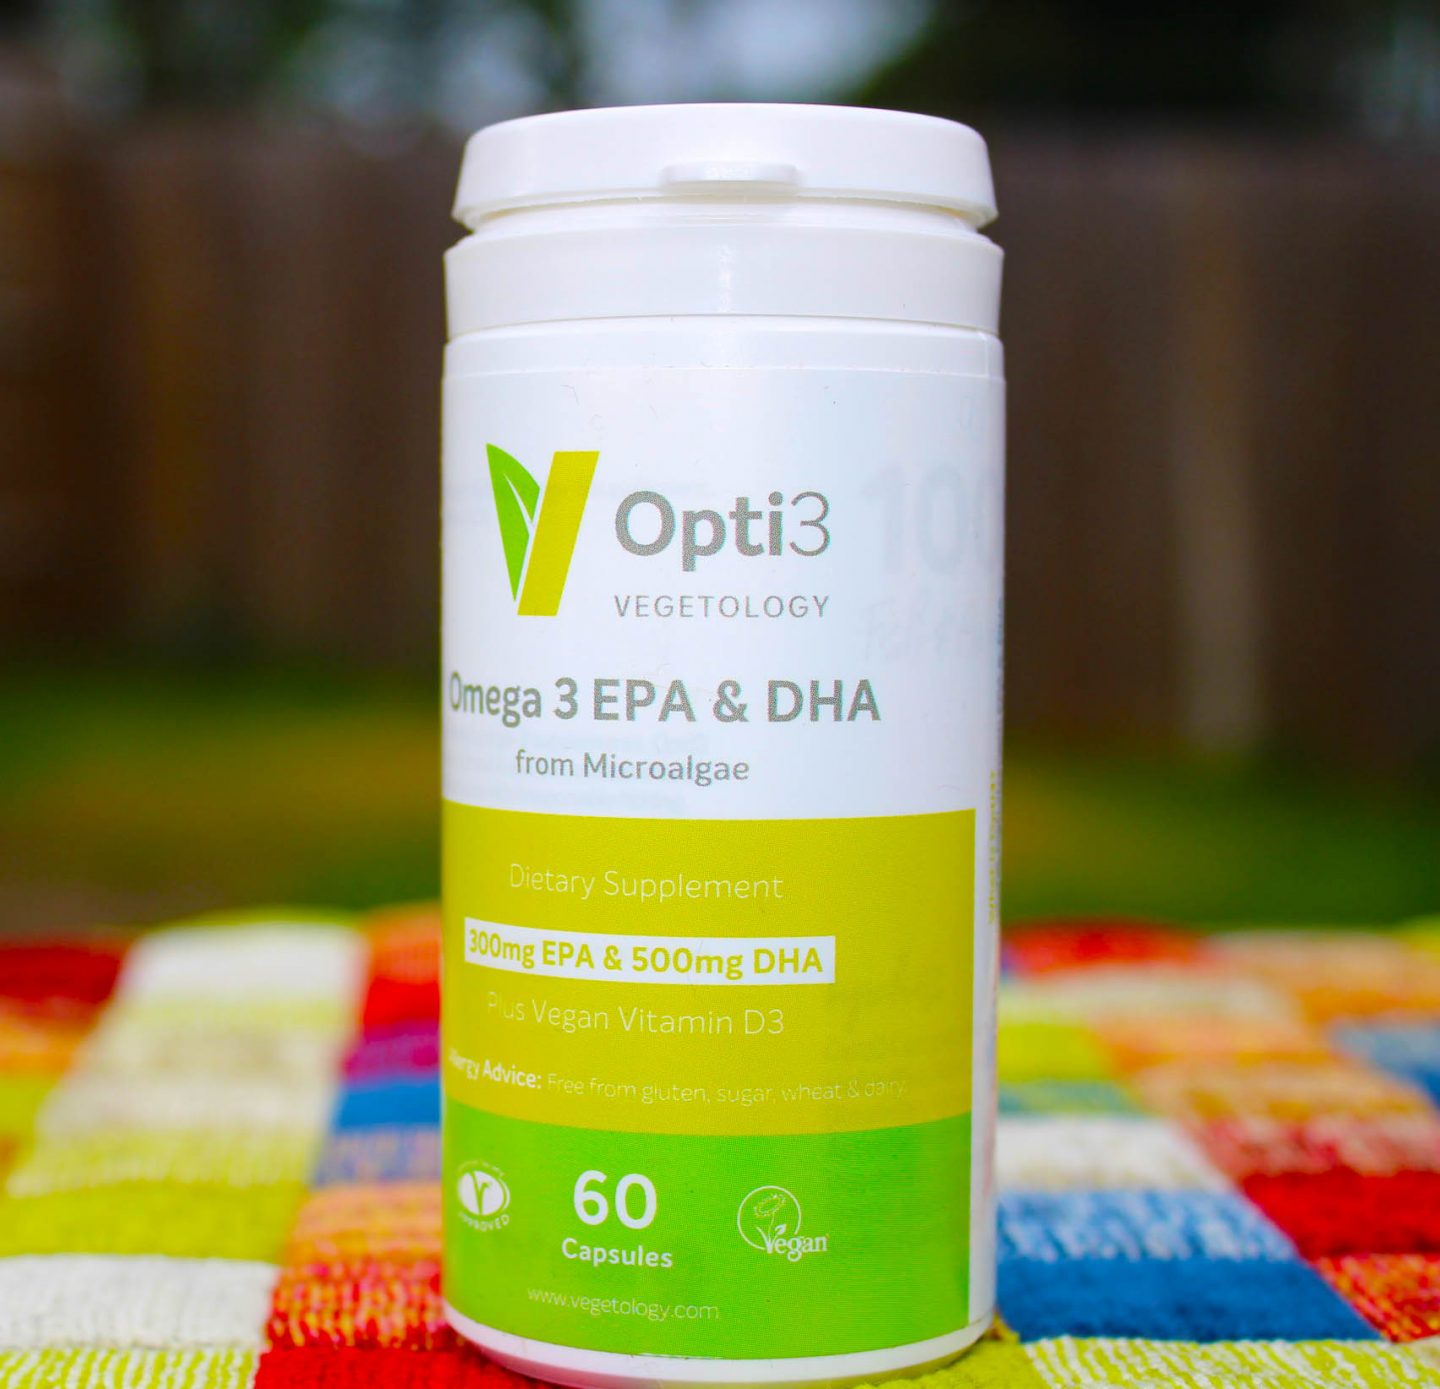 vegan omega 3 health supplement from Vegetology.